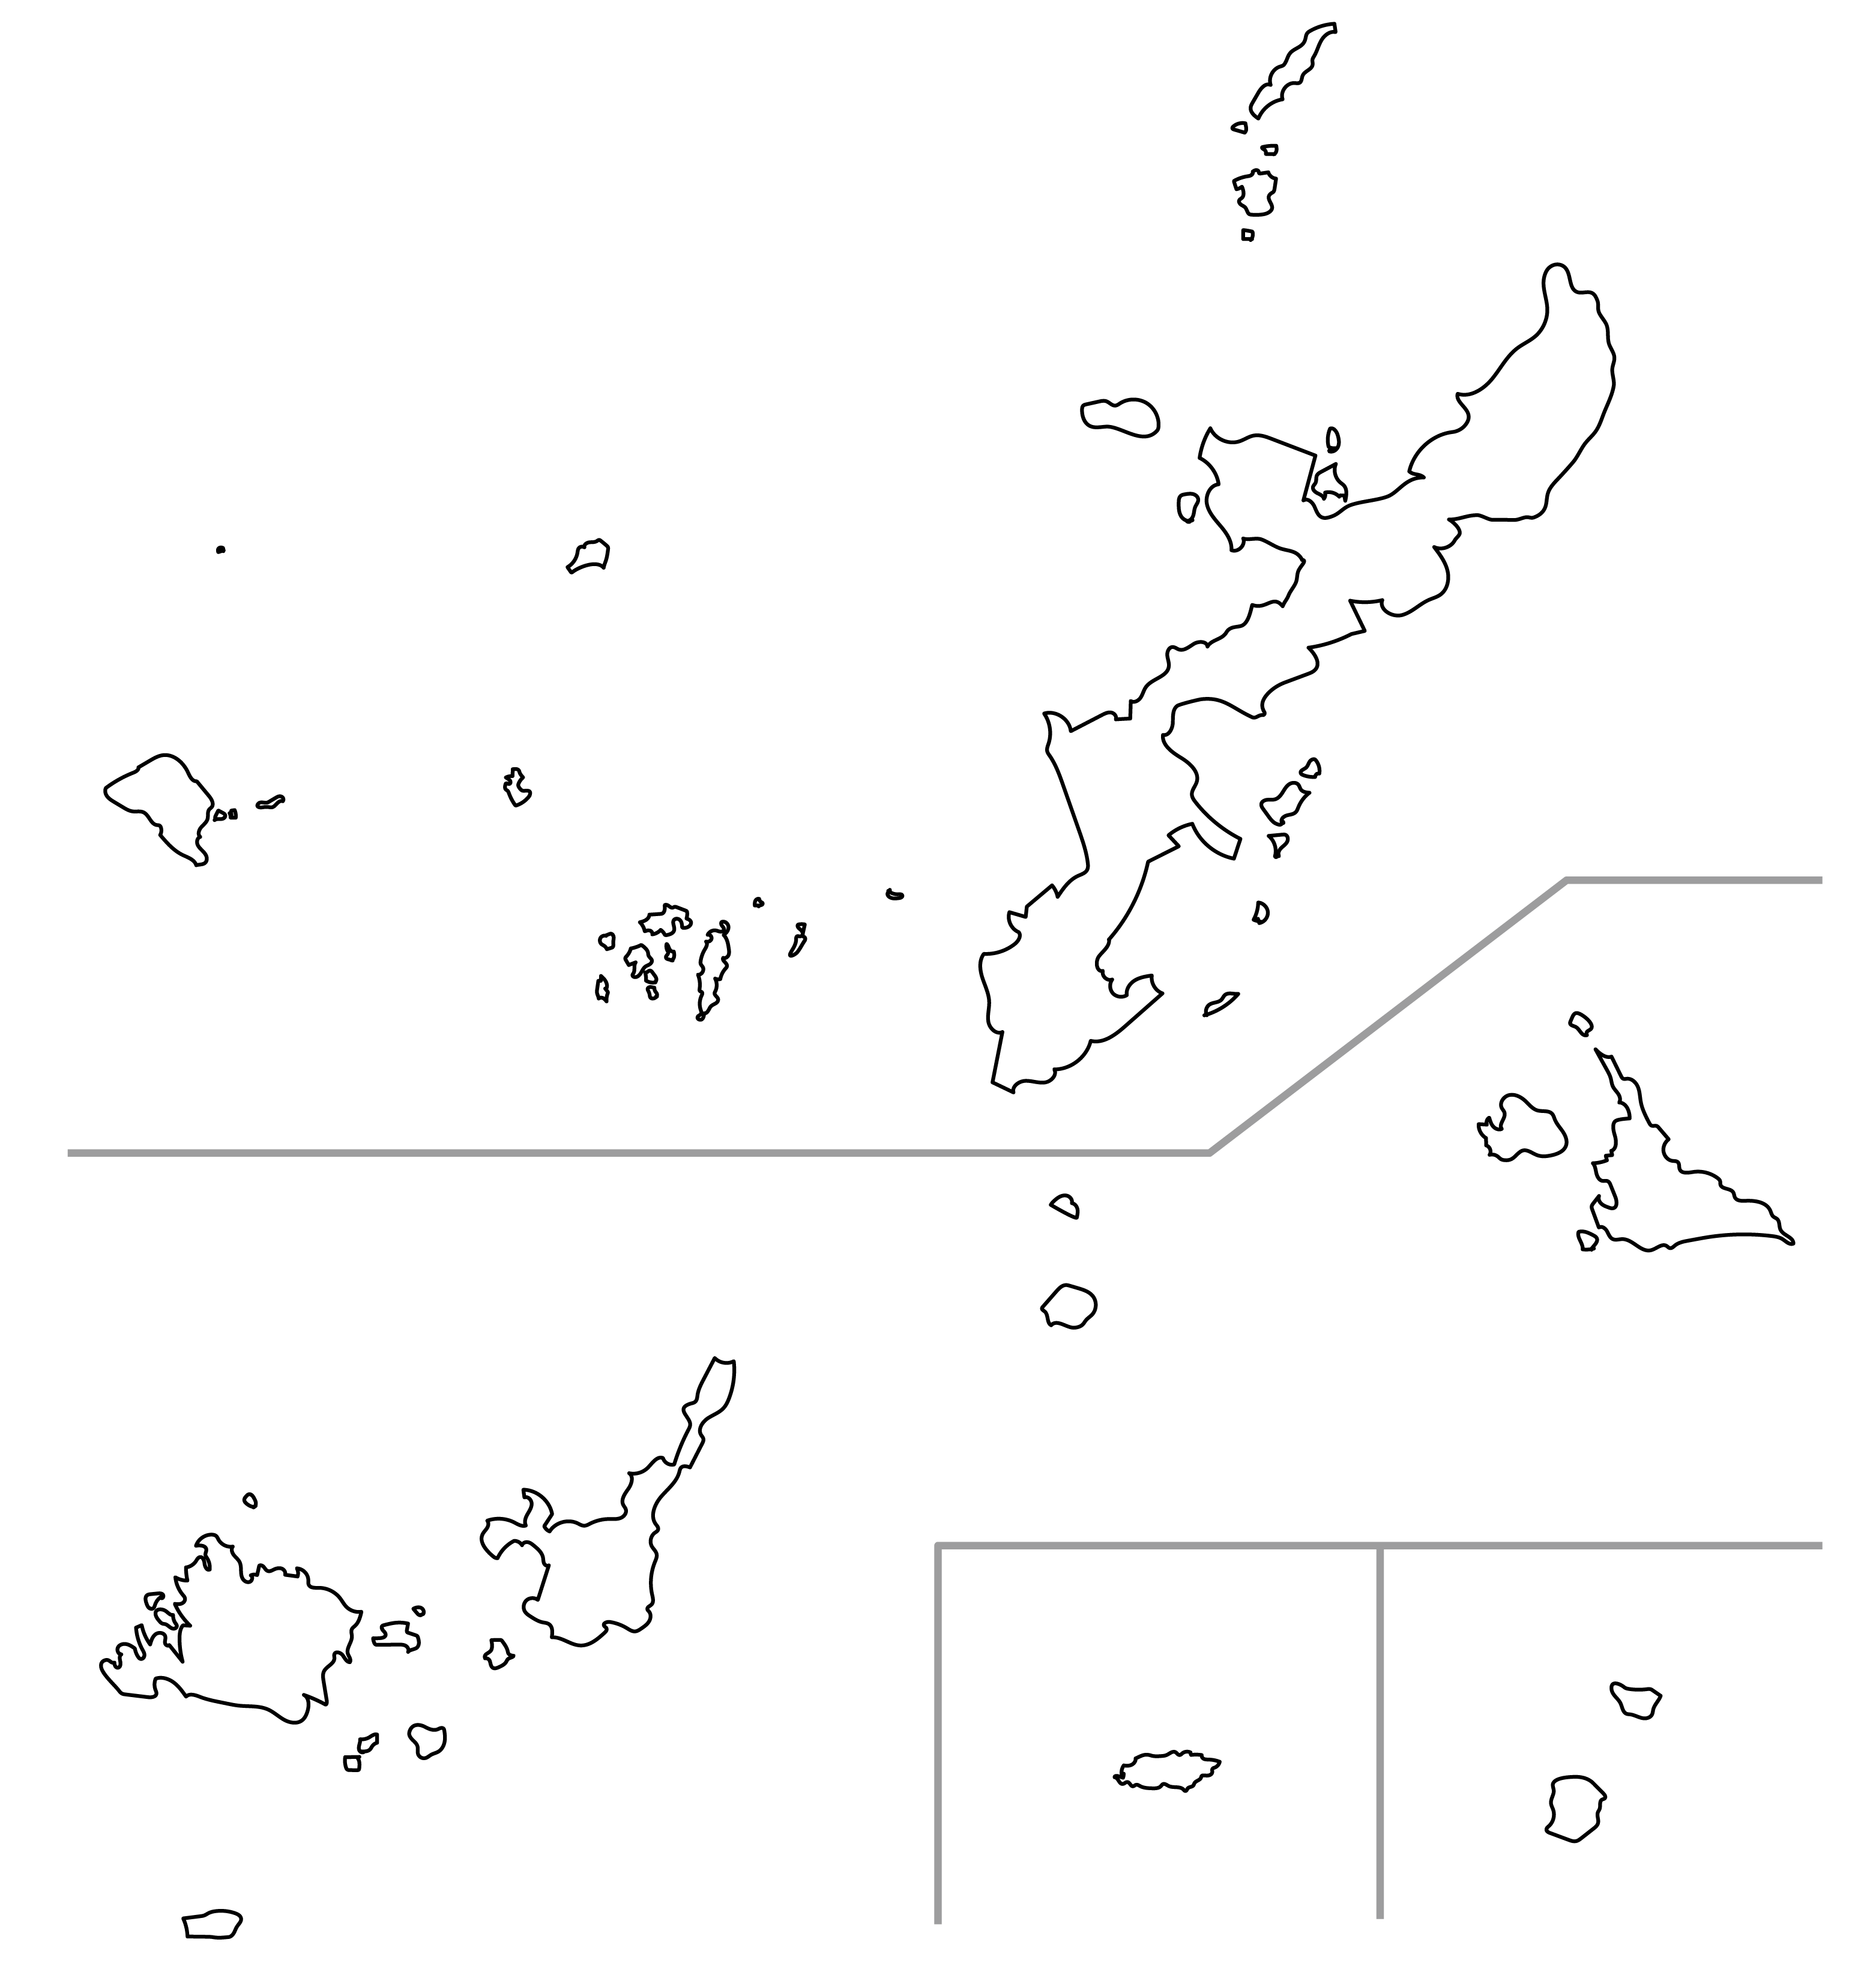 日本地図の白地図を無料ダウンロード 地図 路線図職工所